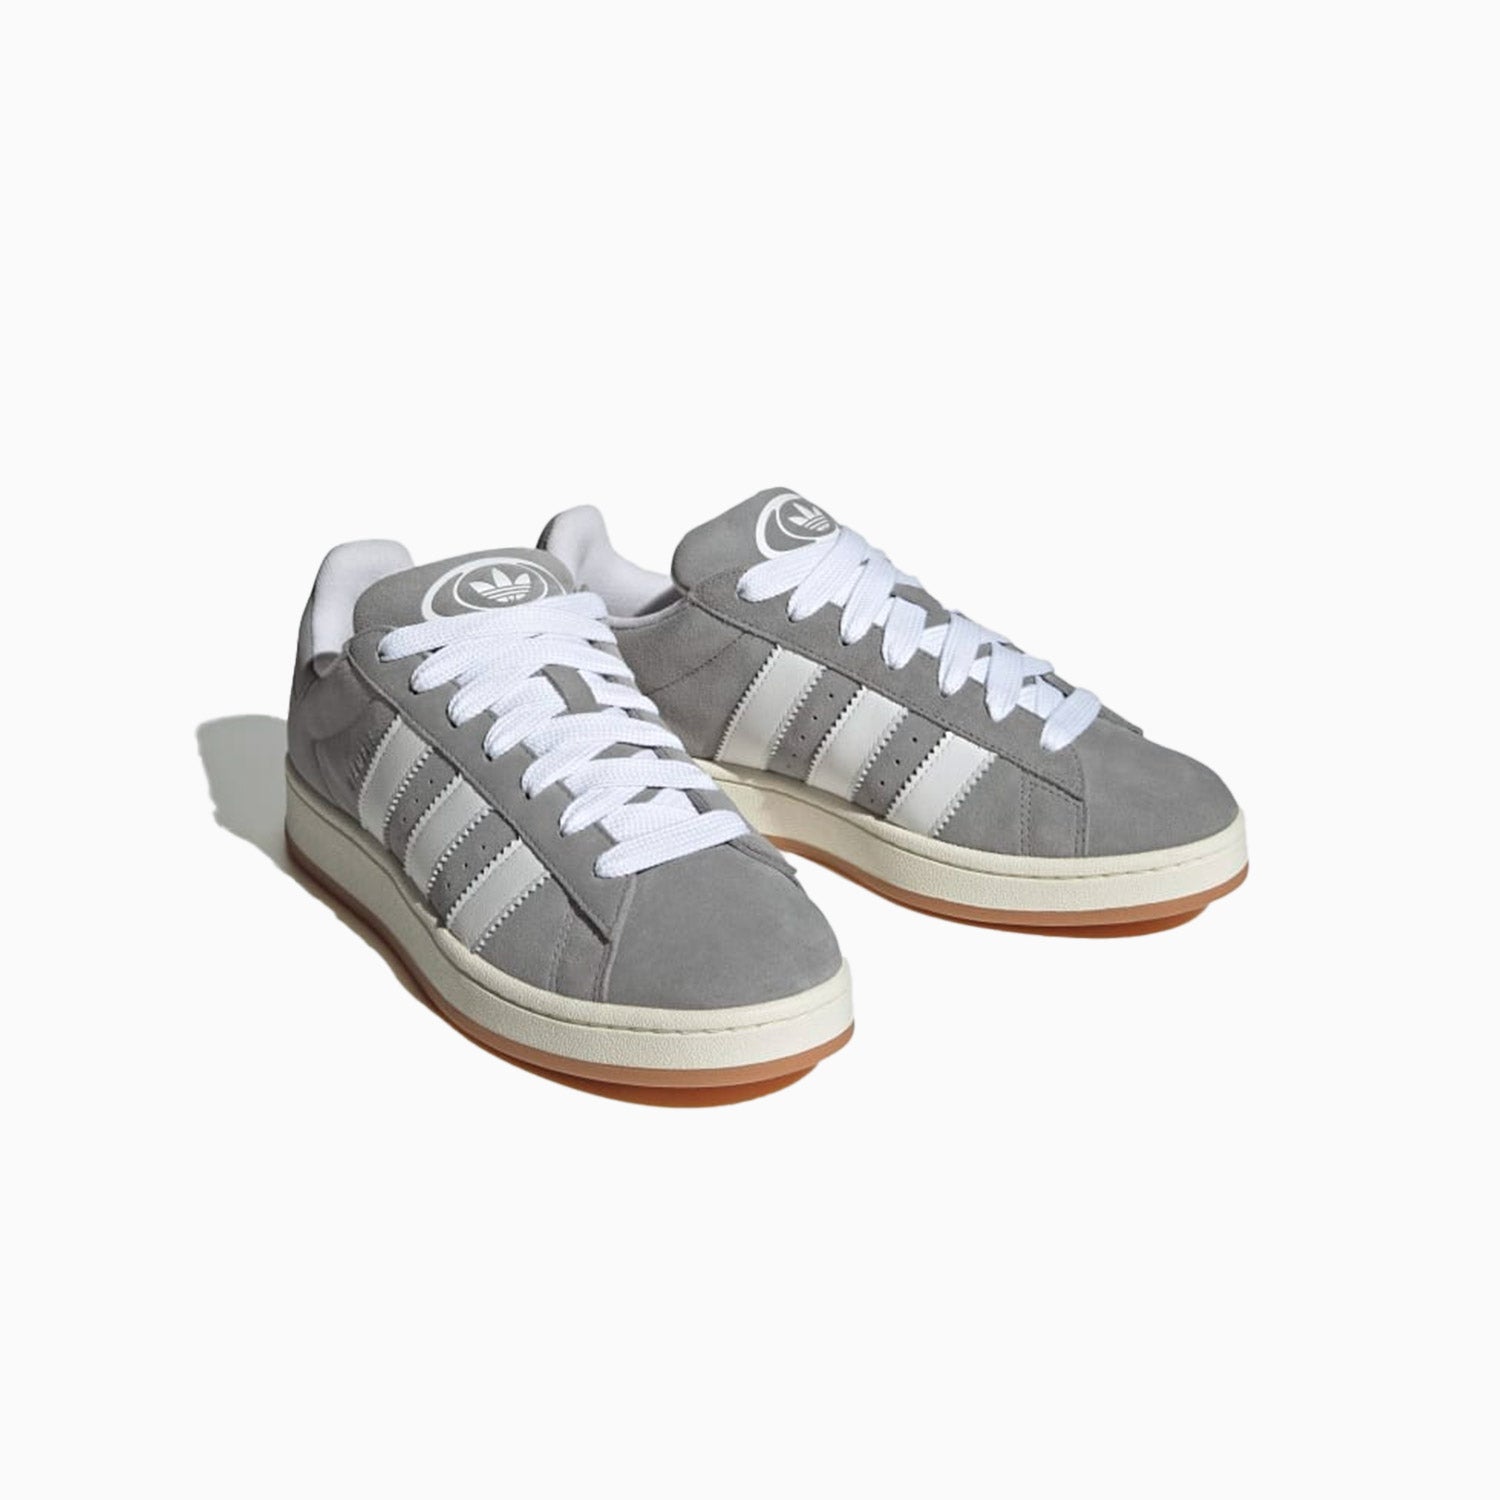 adidas-original-campus-00s-shoes-shoes-hq8707